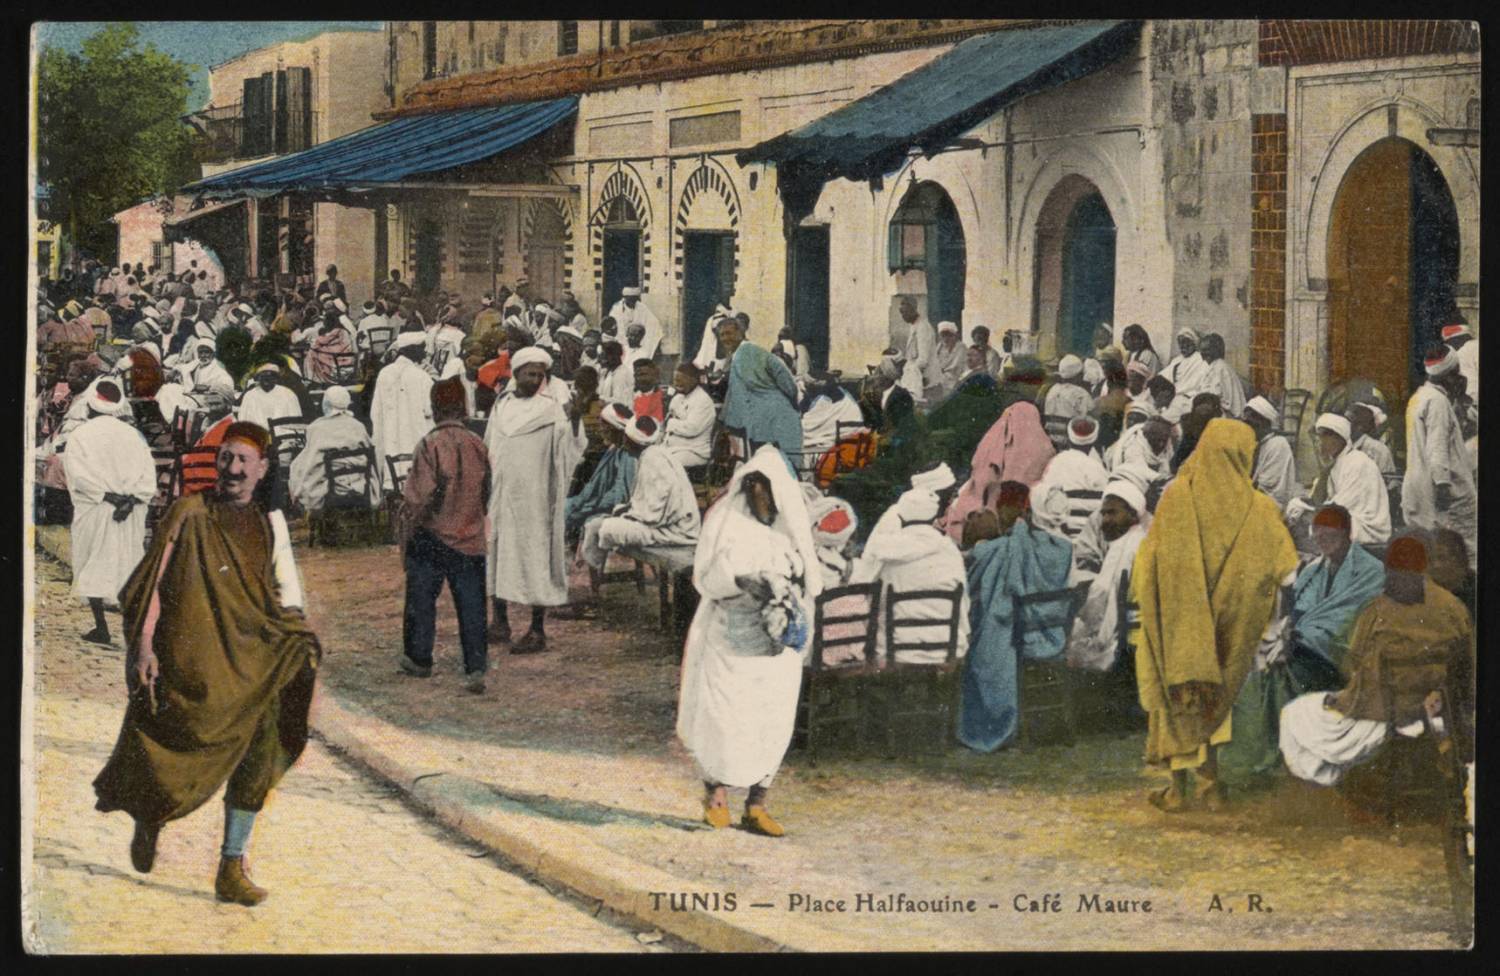 Halfaouine Square with sidewalk cafés. Colorized postcard.<br>